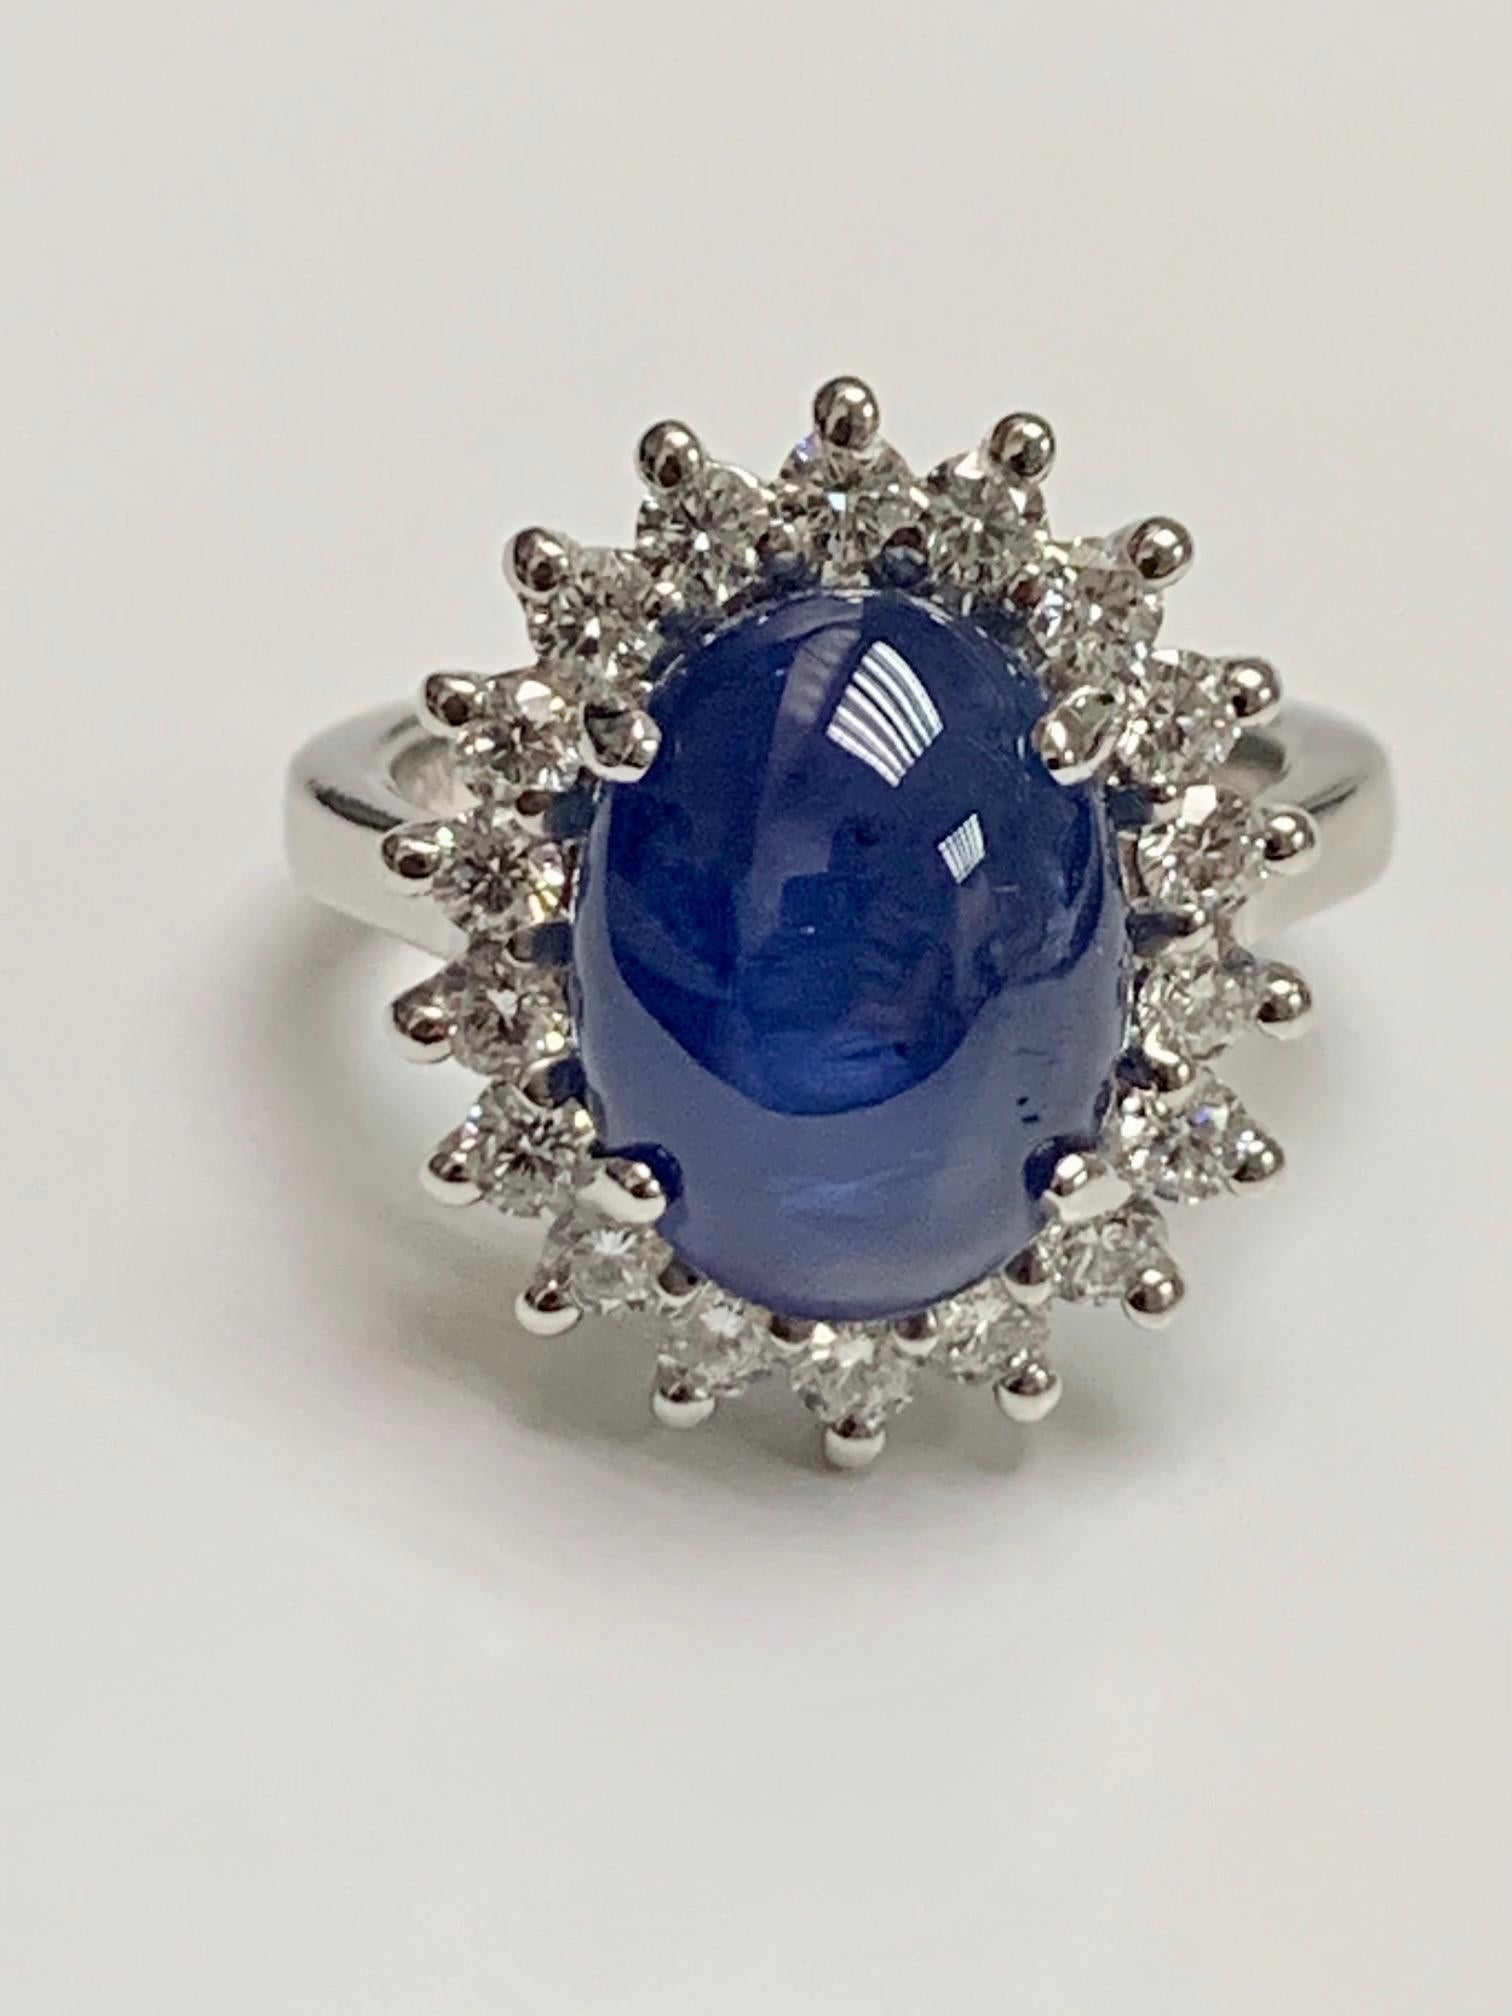 8.97 Karat Cab blauer Saphir in 18k Weißgold Ring mit 1,4 Karat Diamant umgeben.